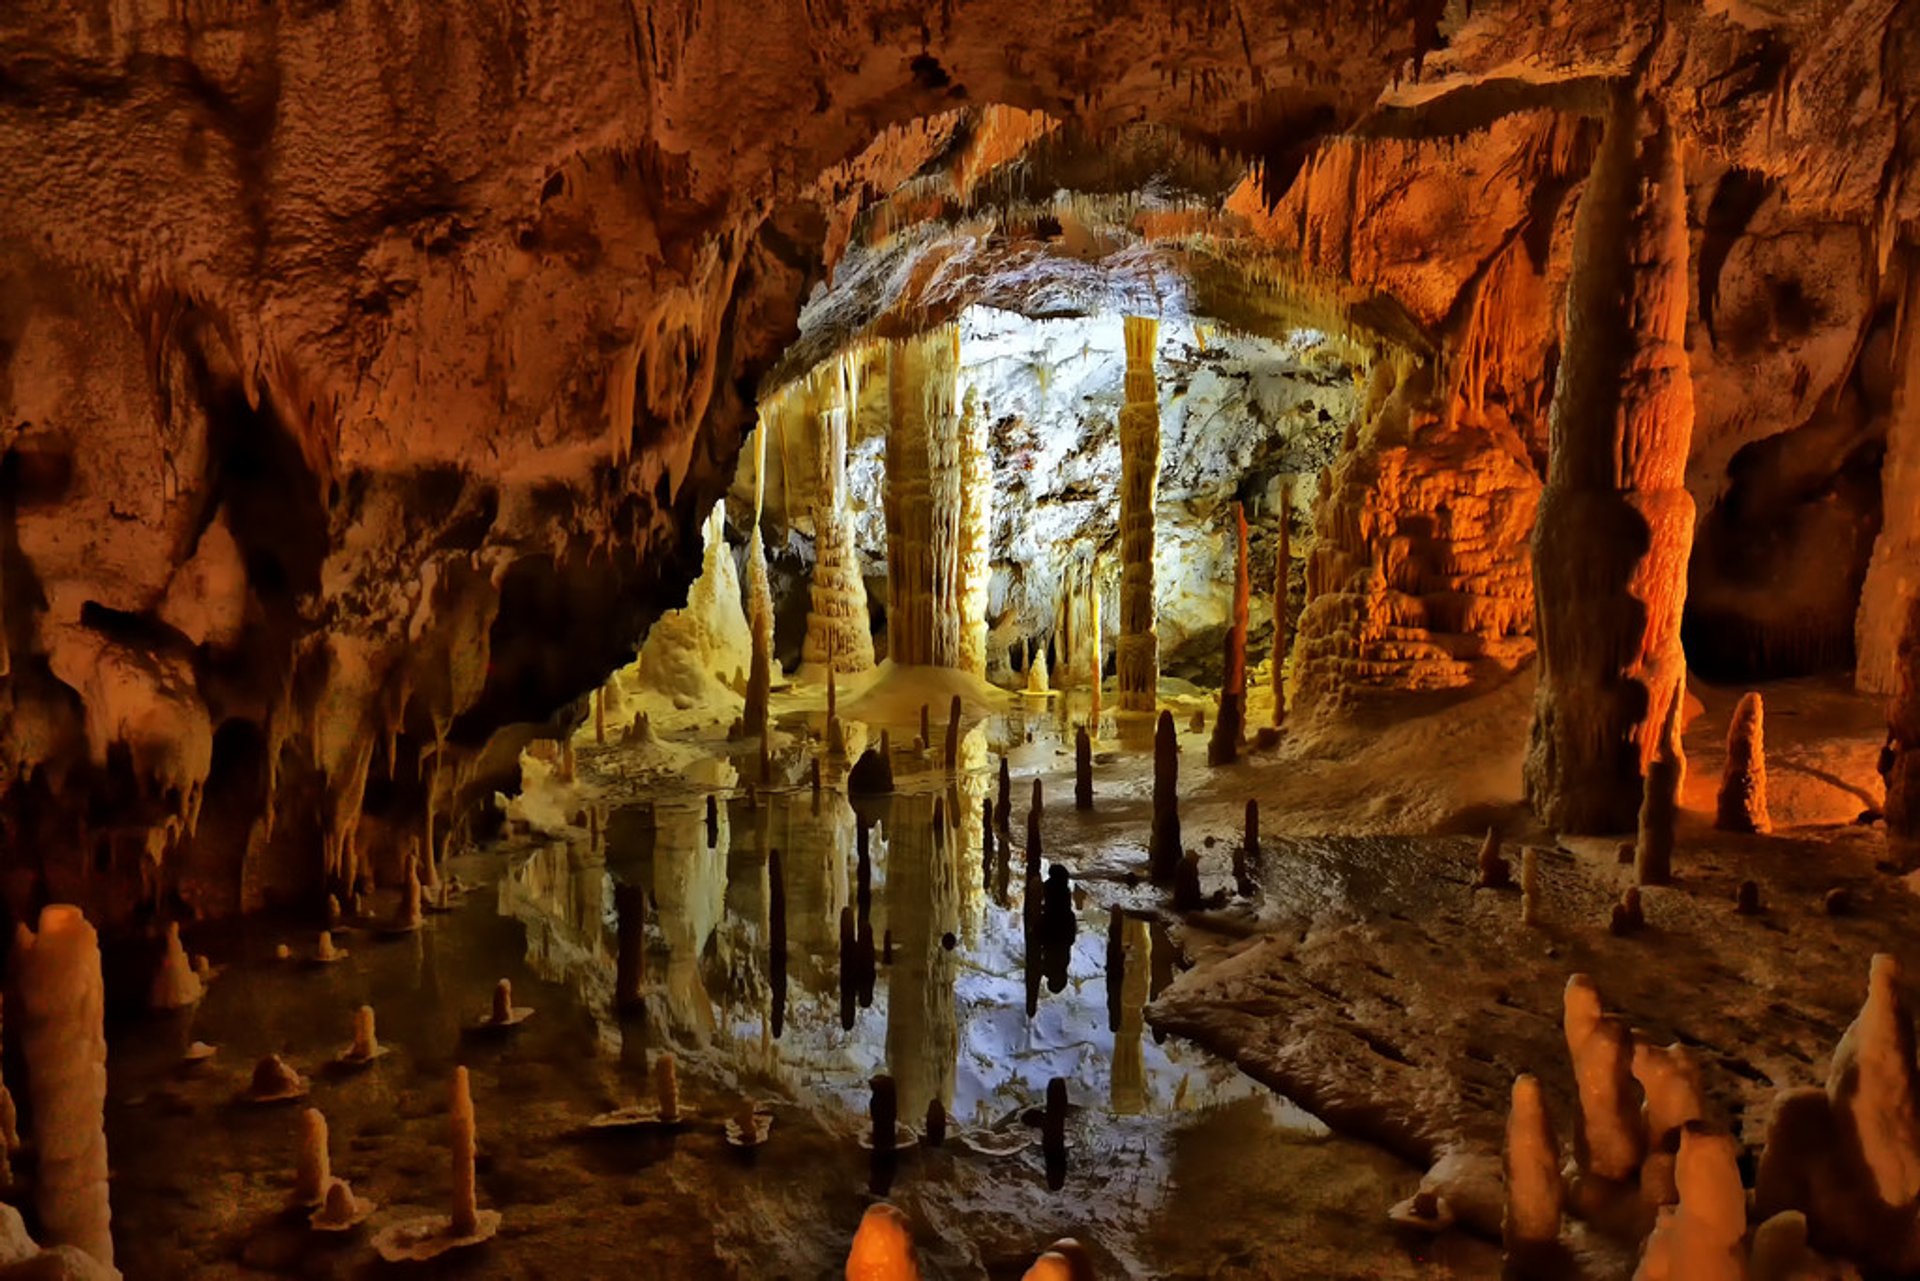 Grotte di Frasassi, Genga